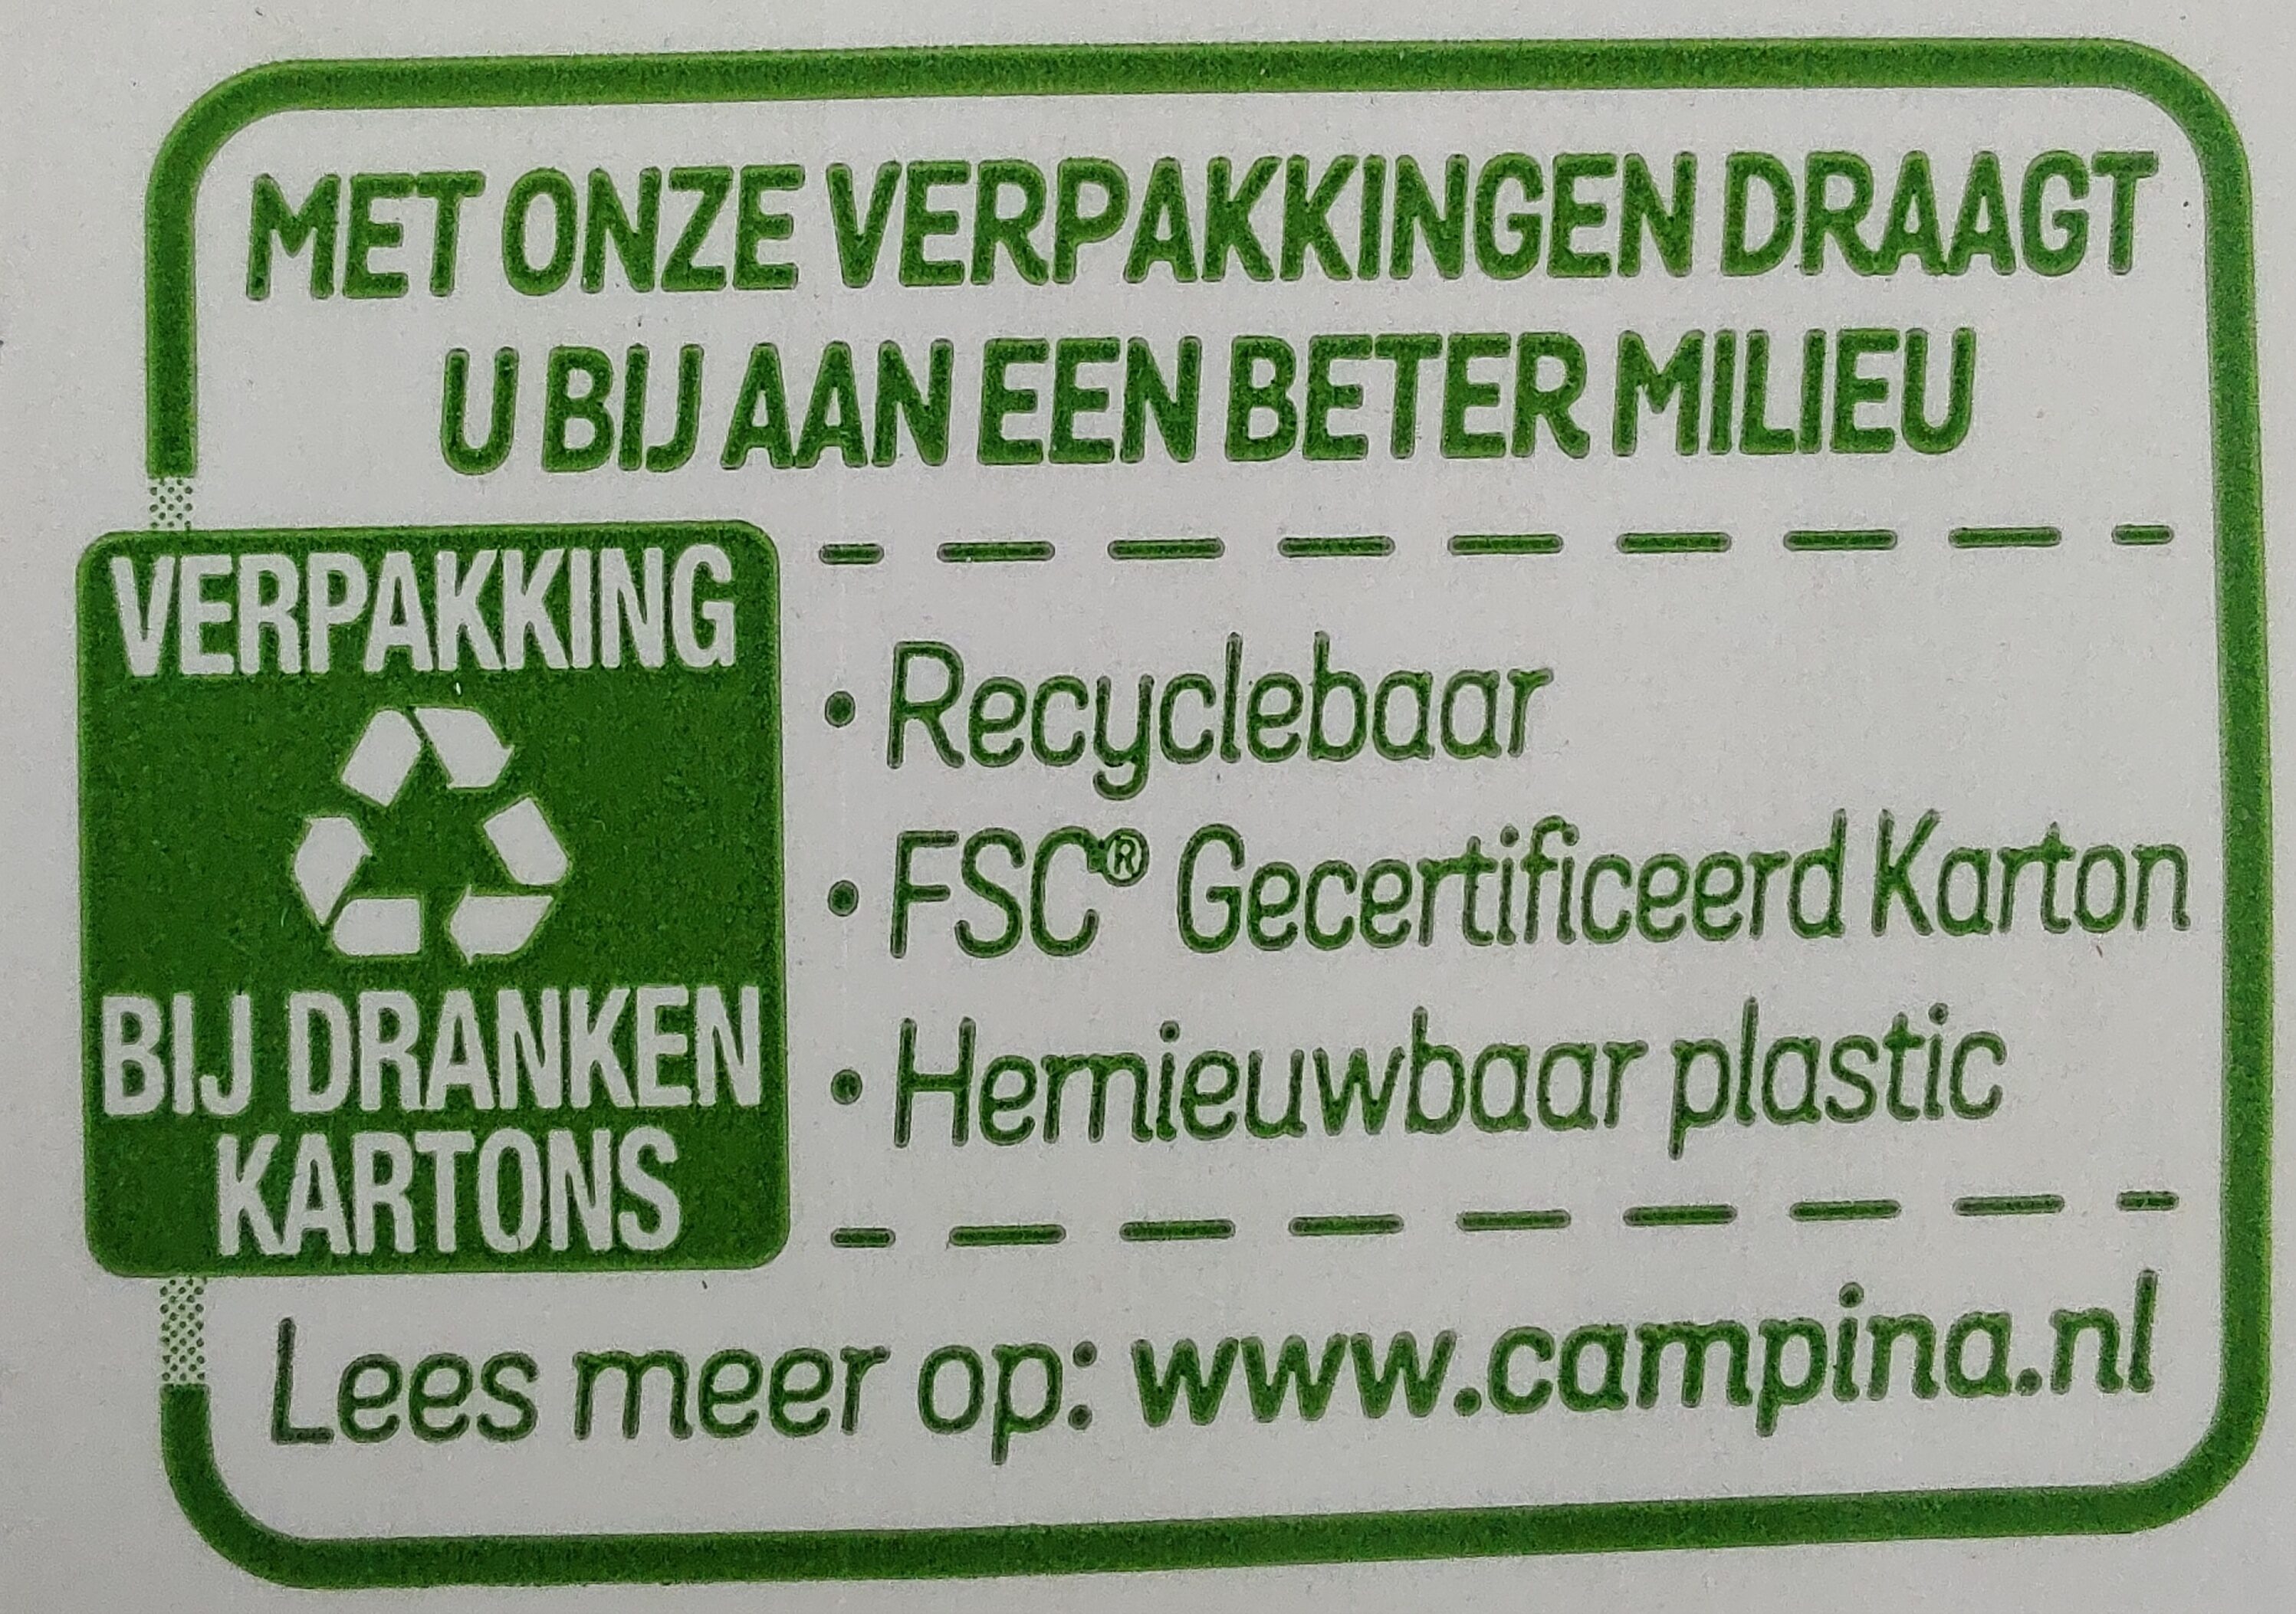 Sojadrank - Recyclinginstructies en / of verpakkingsinformatie